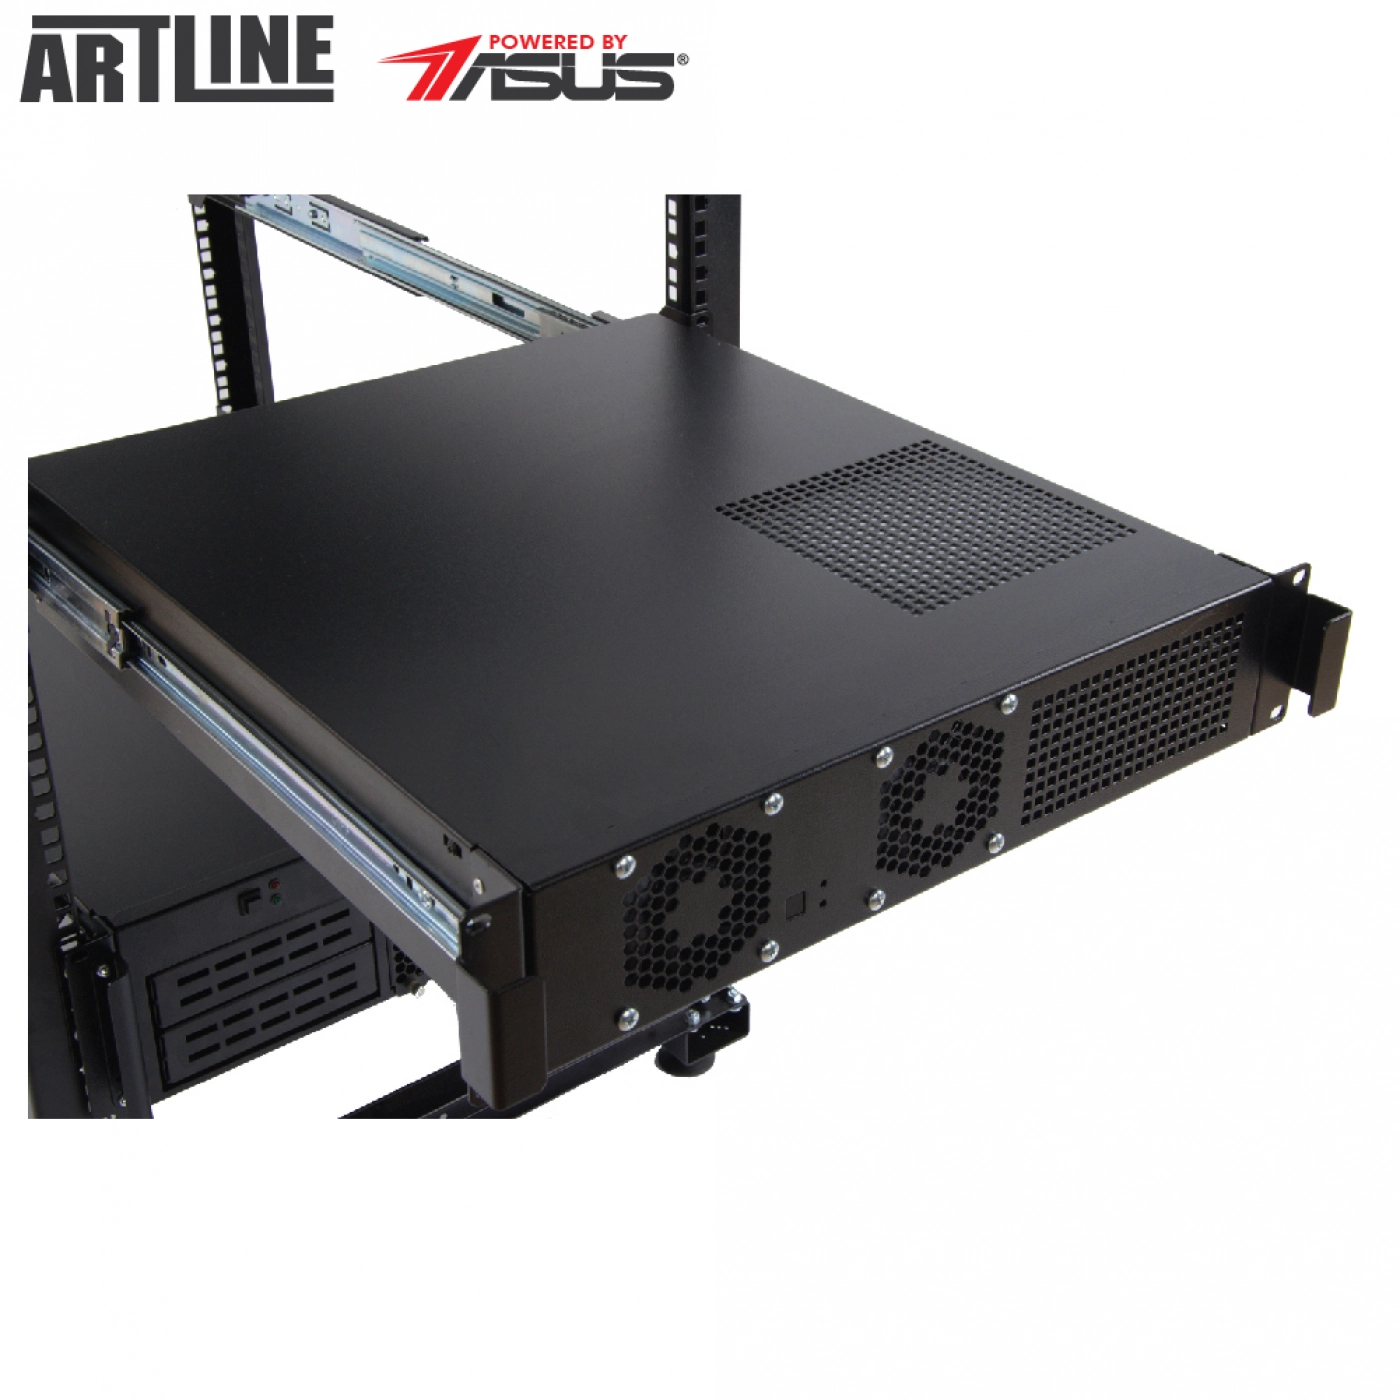 Купить Сервер ARTLINE Business R15v11 - фото 6